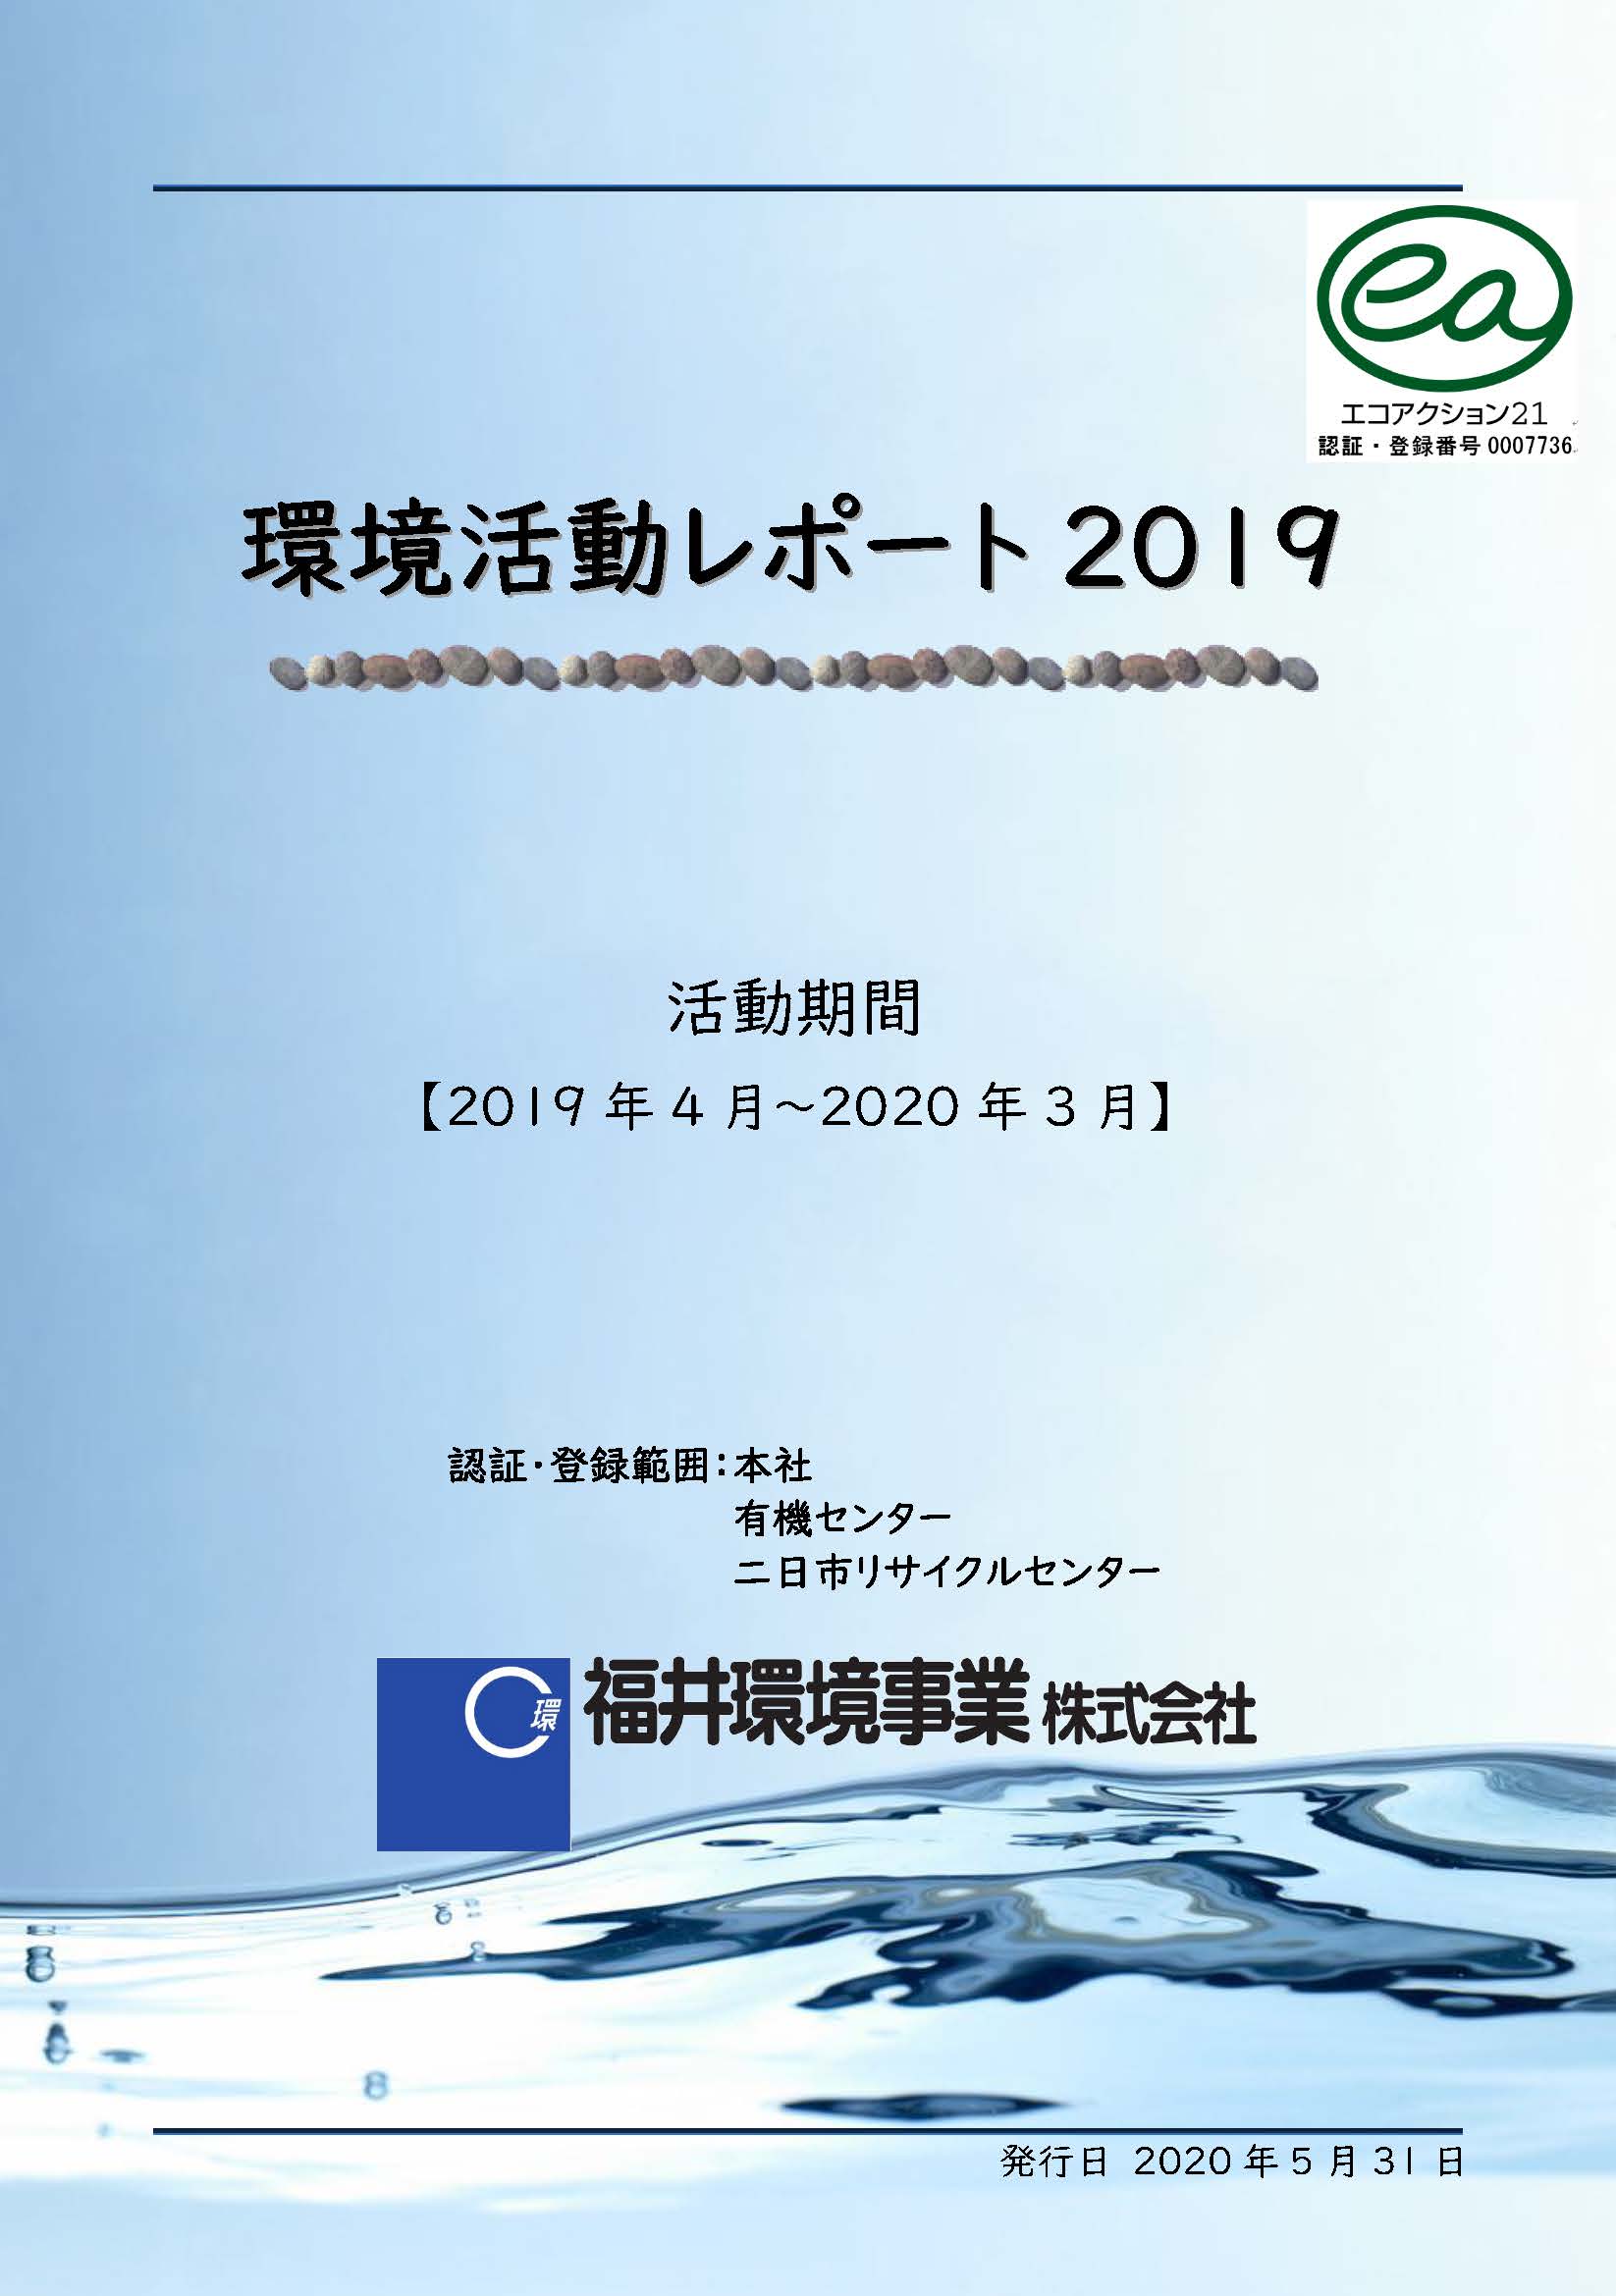 「環境への取り組みのご紹介」で環境活動レポート2019版を改訂しました。